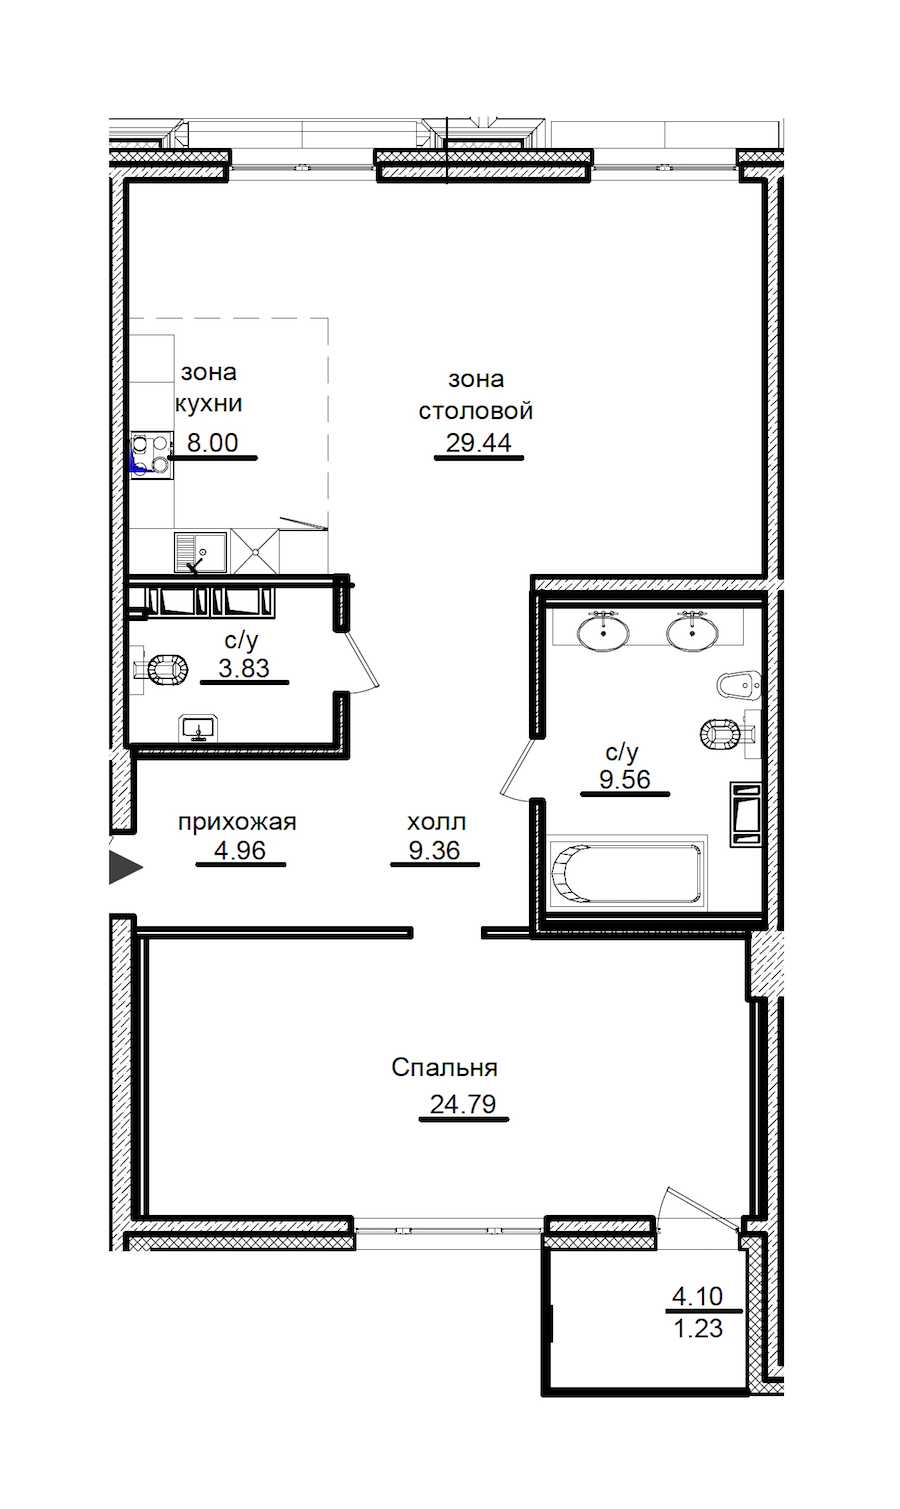 Однокомнатная квартира в : площадь 90.02 м2 , этаж: 4 – купить в Санкт-Петербурге